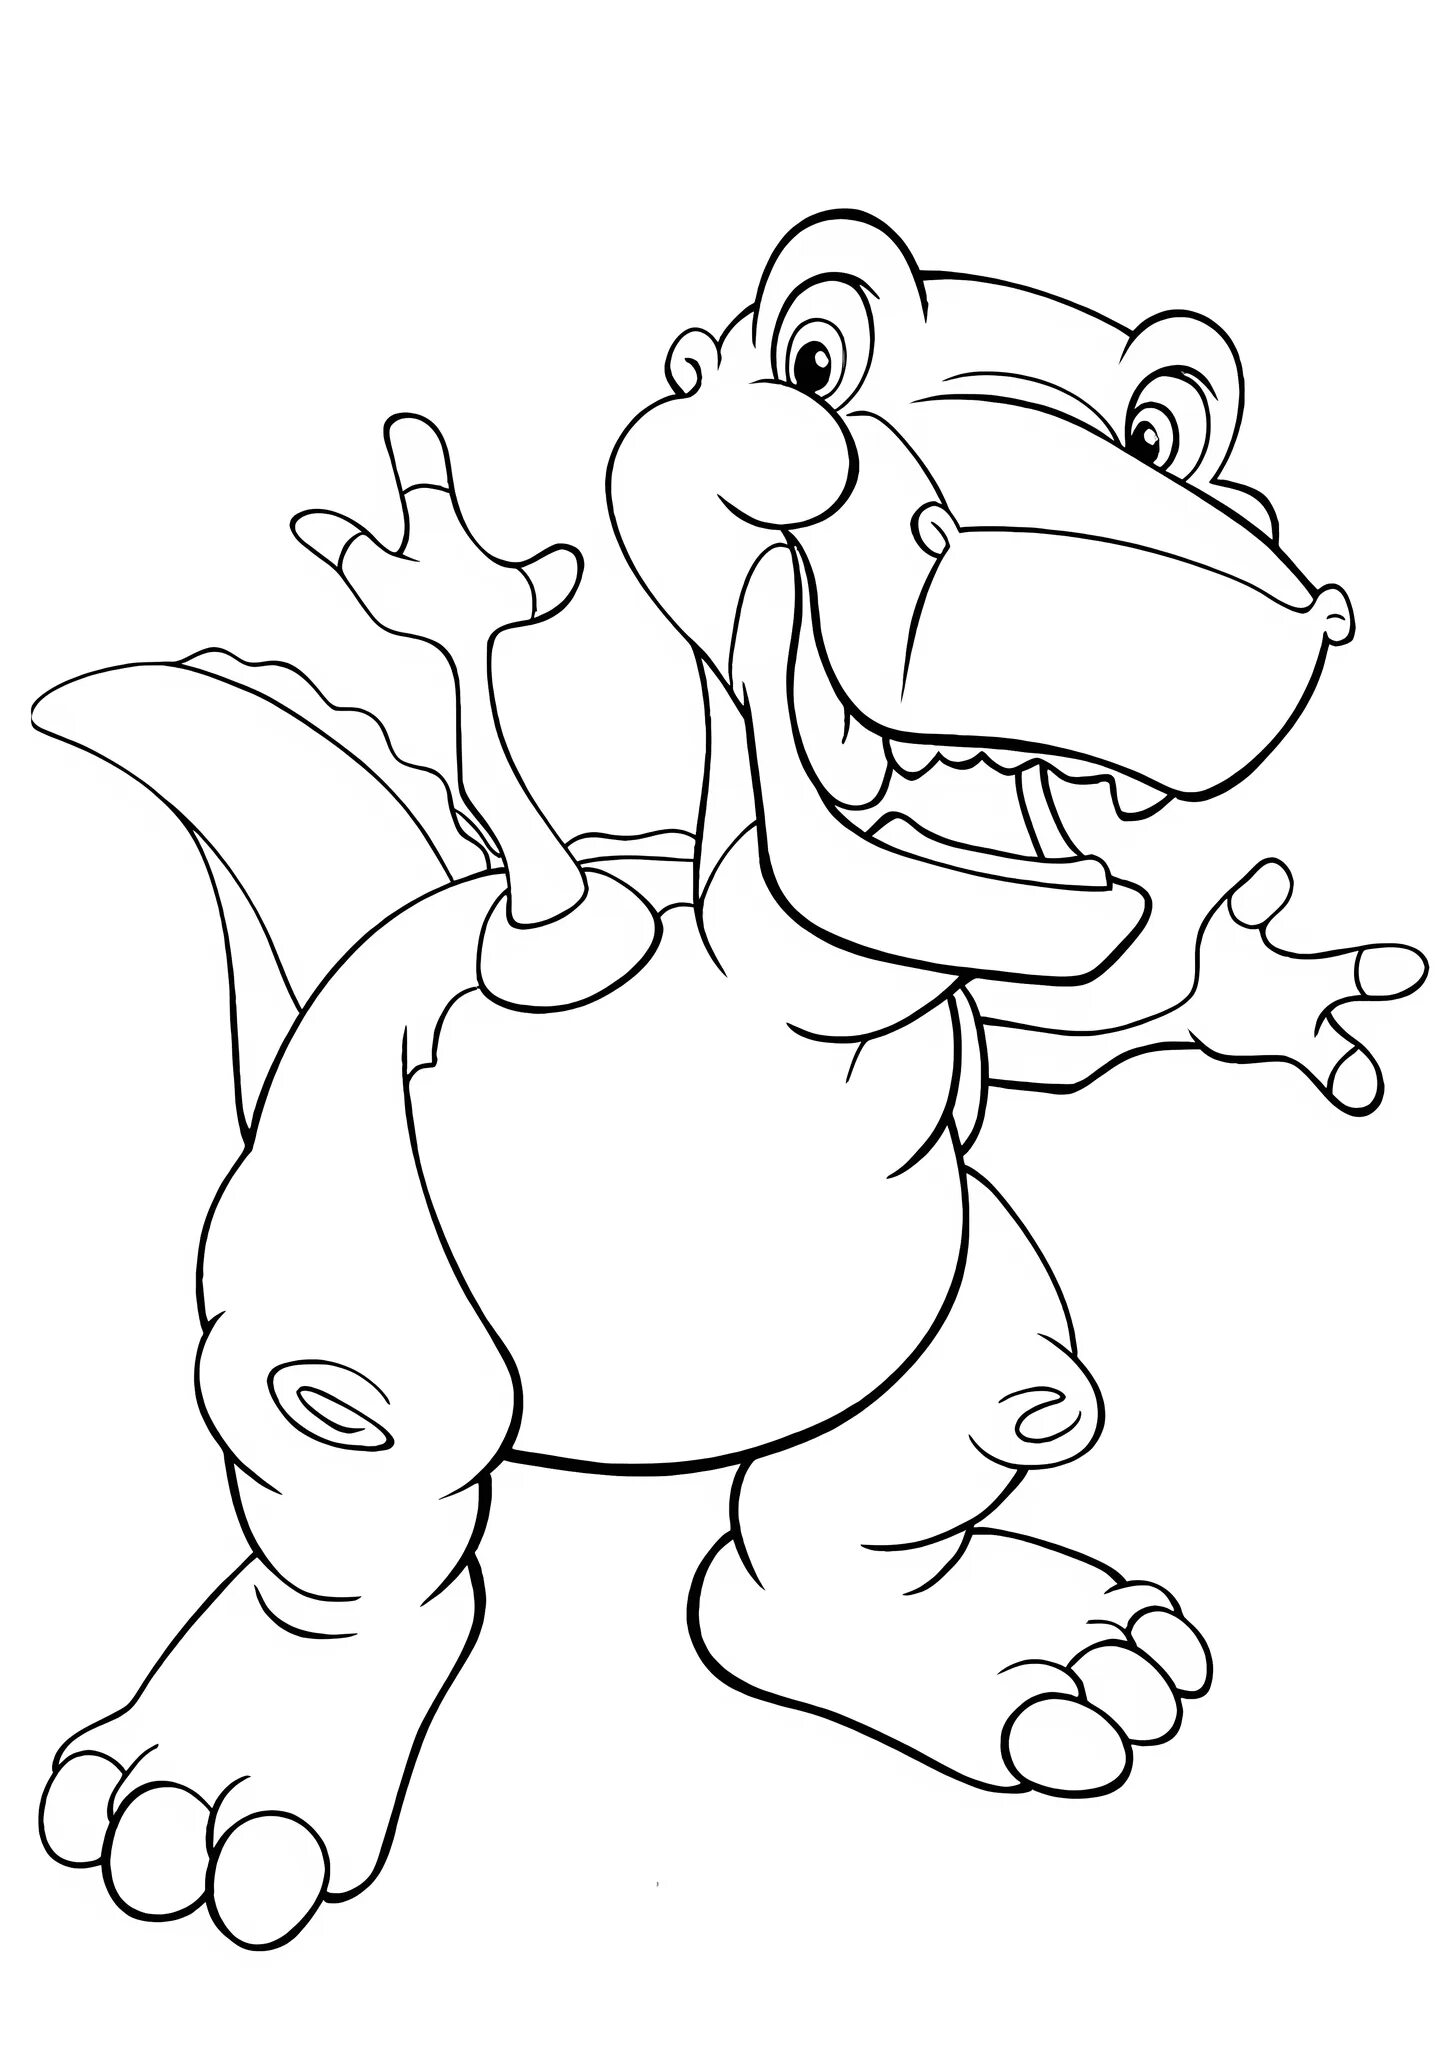 Динозавры раскраска а4. Динозавры / раскраска. Динозавр раскраска для детей. Раскраска "Динозаврики". Рисунок динозавра для раскрашивания.